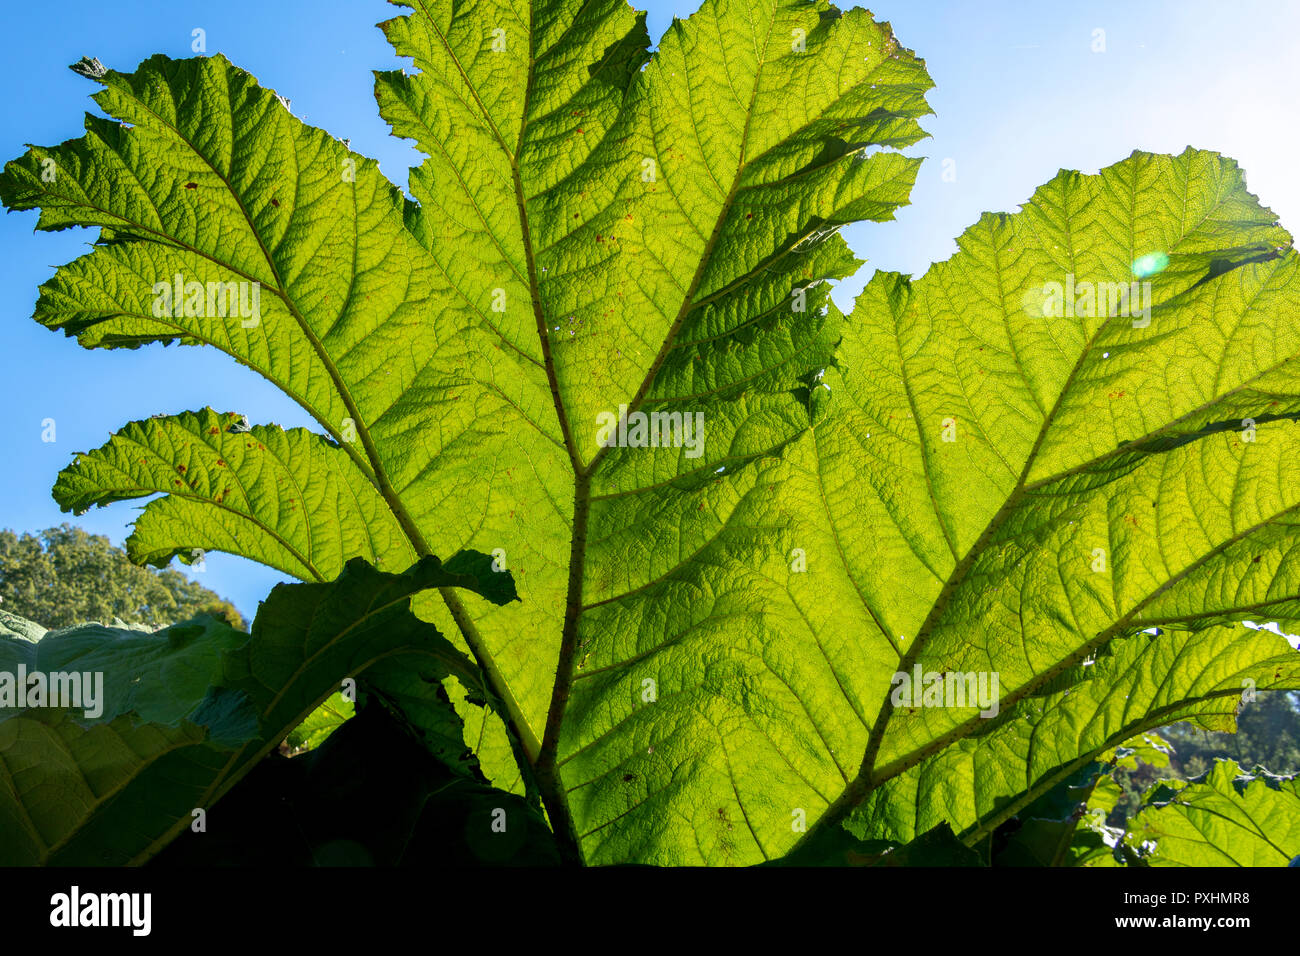 Riesige Blätter der Gunnera manicata, allgemein bekannt als riesige Rhabarber. Jeder Teil der großen Pflanze hat stachelige Dornen. Nahaufnahme Foto zeigt Blattstruktur. Stockfoto